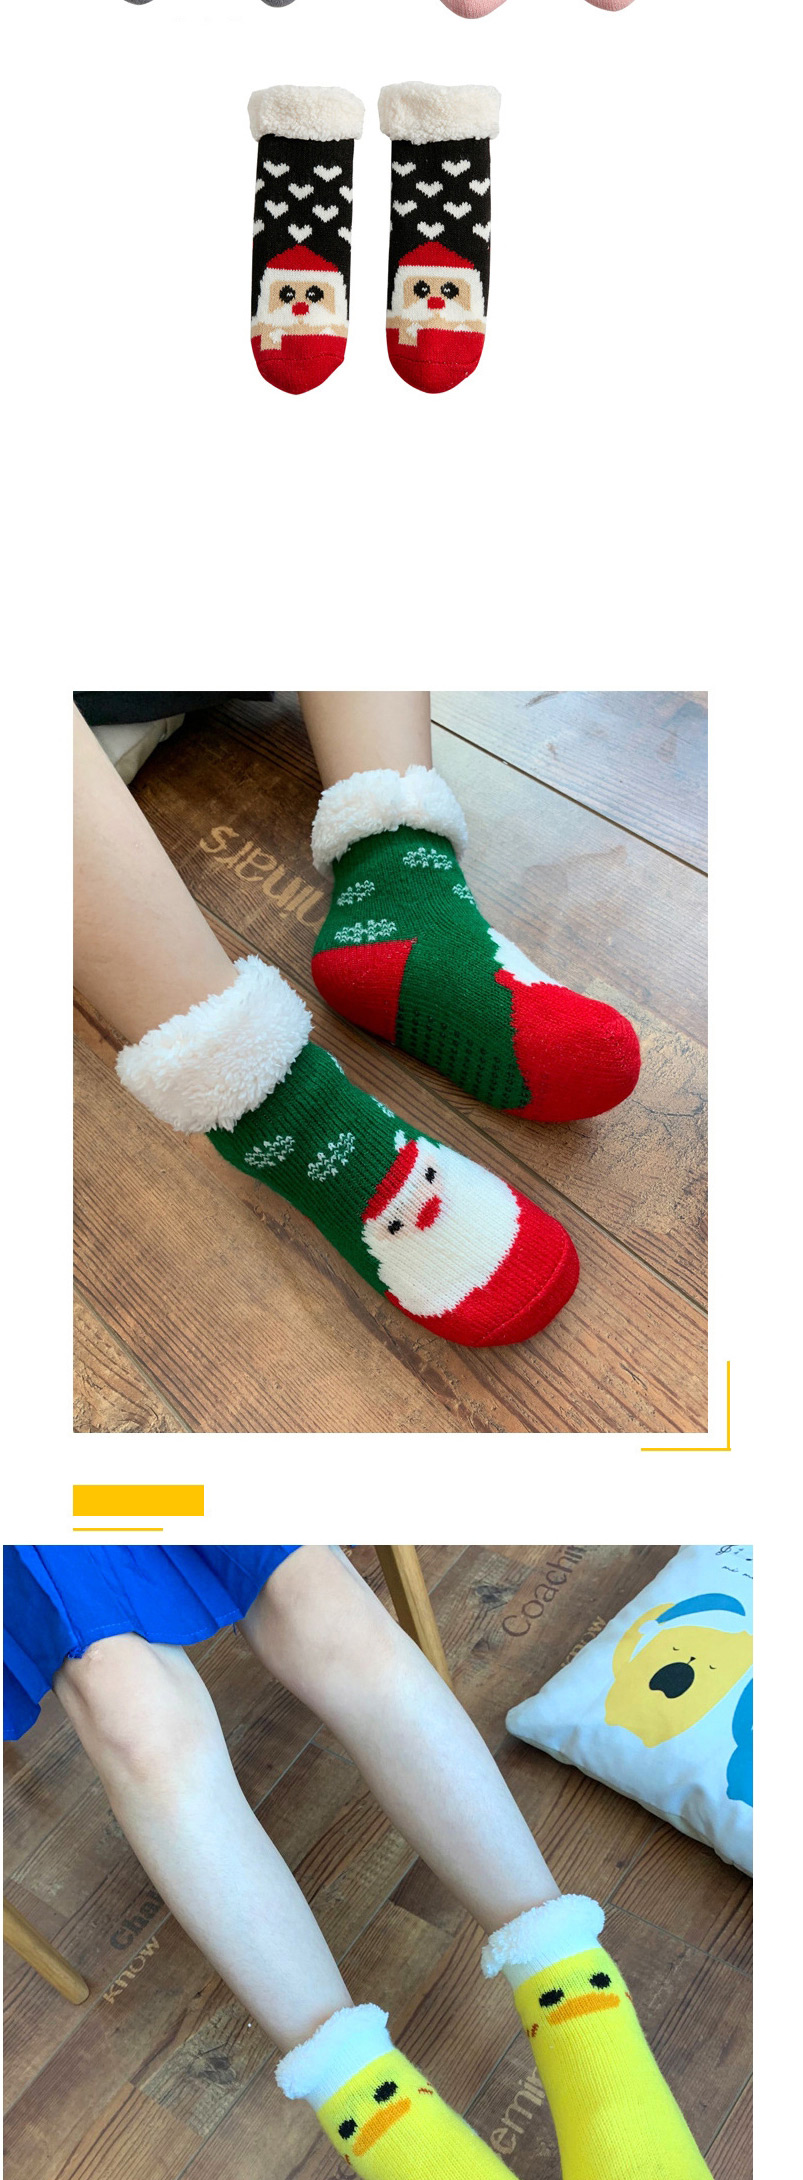 Fashion Bunny Christmas Thick Printed Baby Non-slip Floor Socks,Fashion Socks